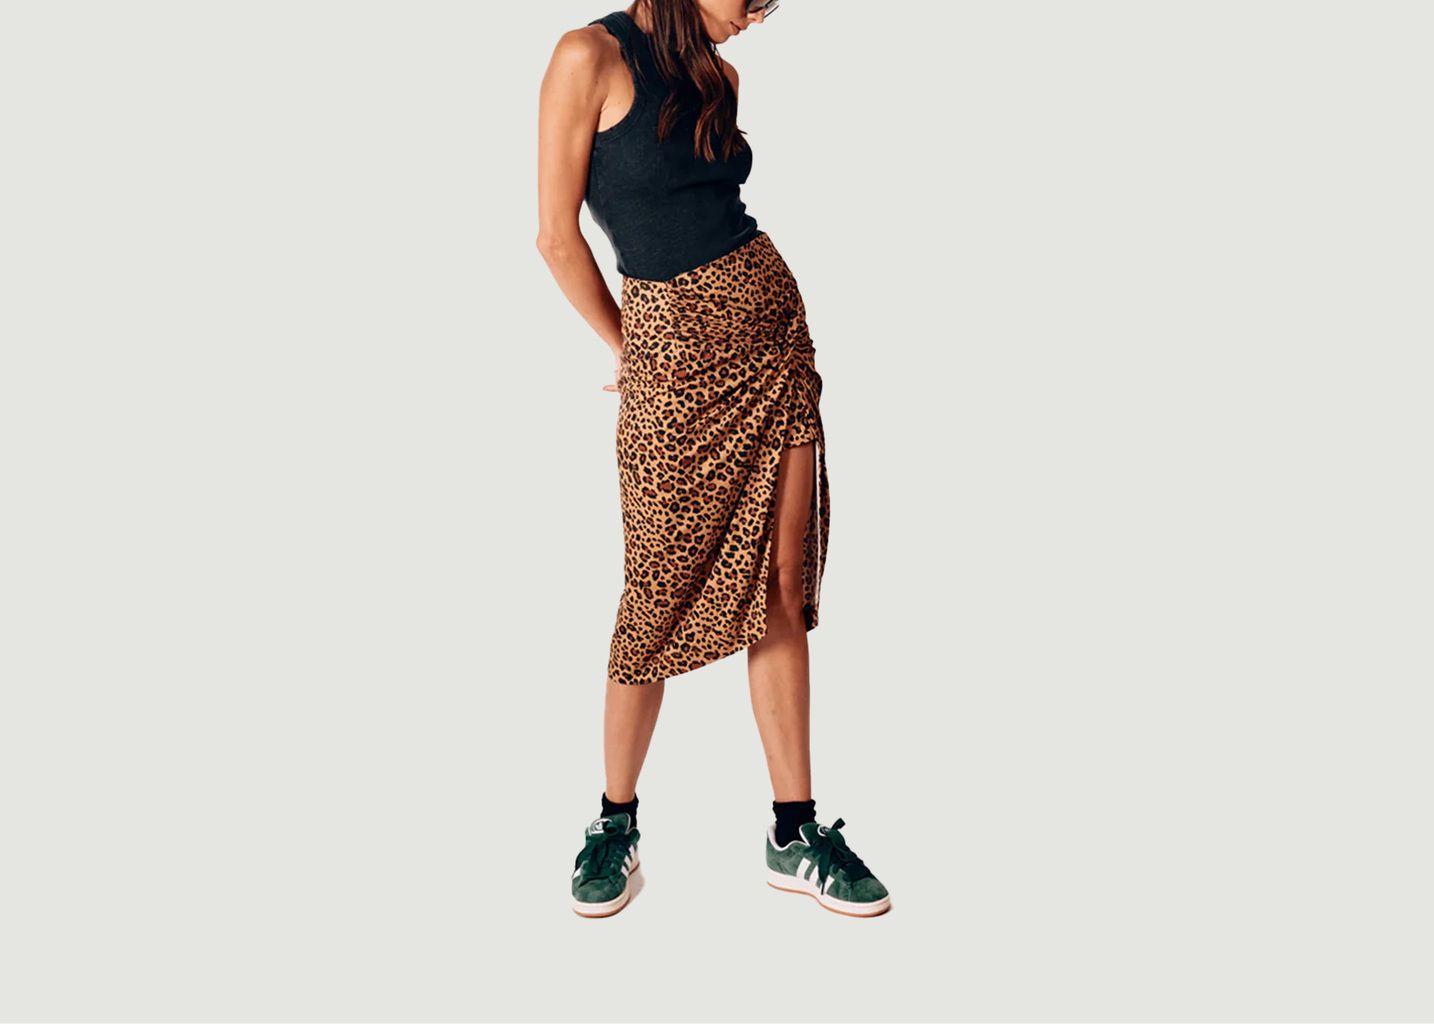 VOGT Leopard Skirt - Parisienne et alors